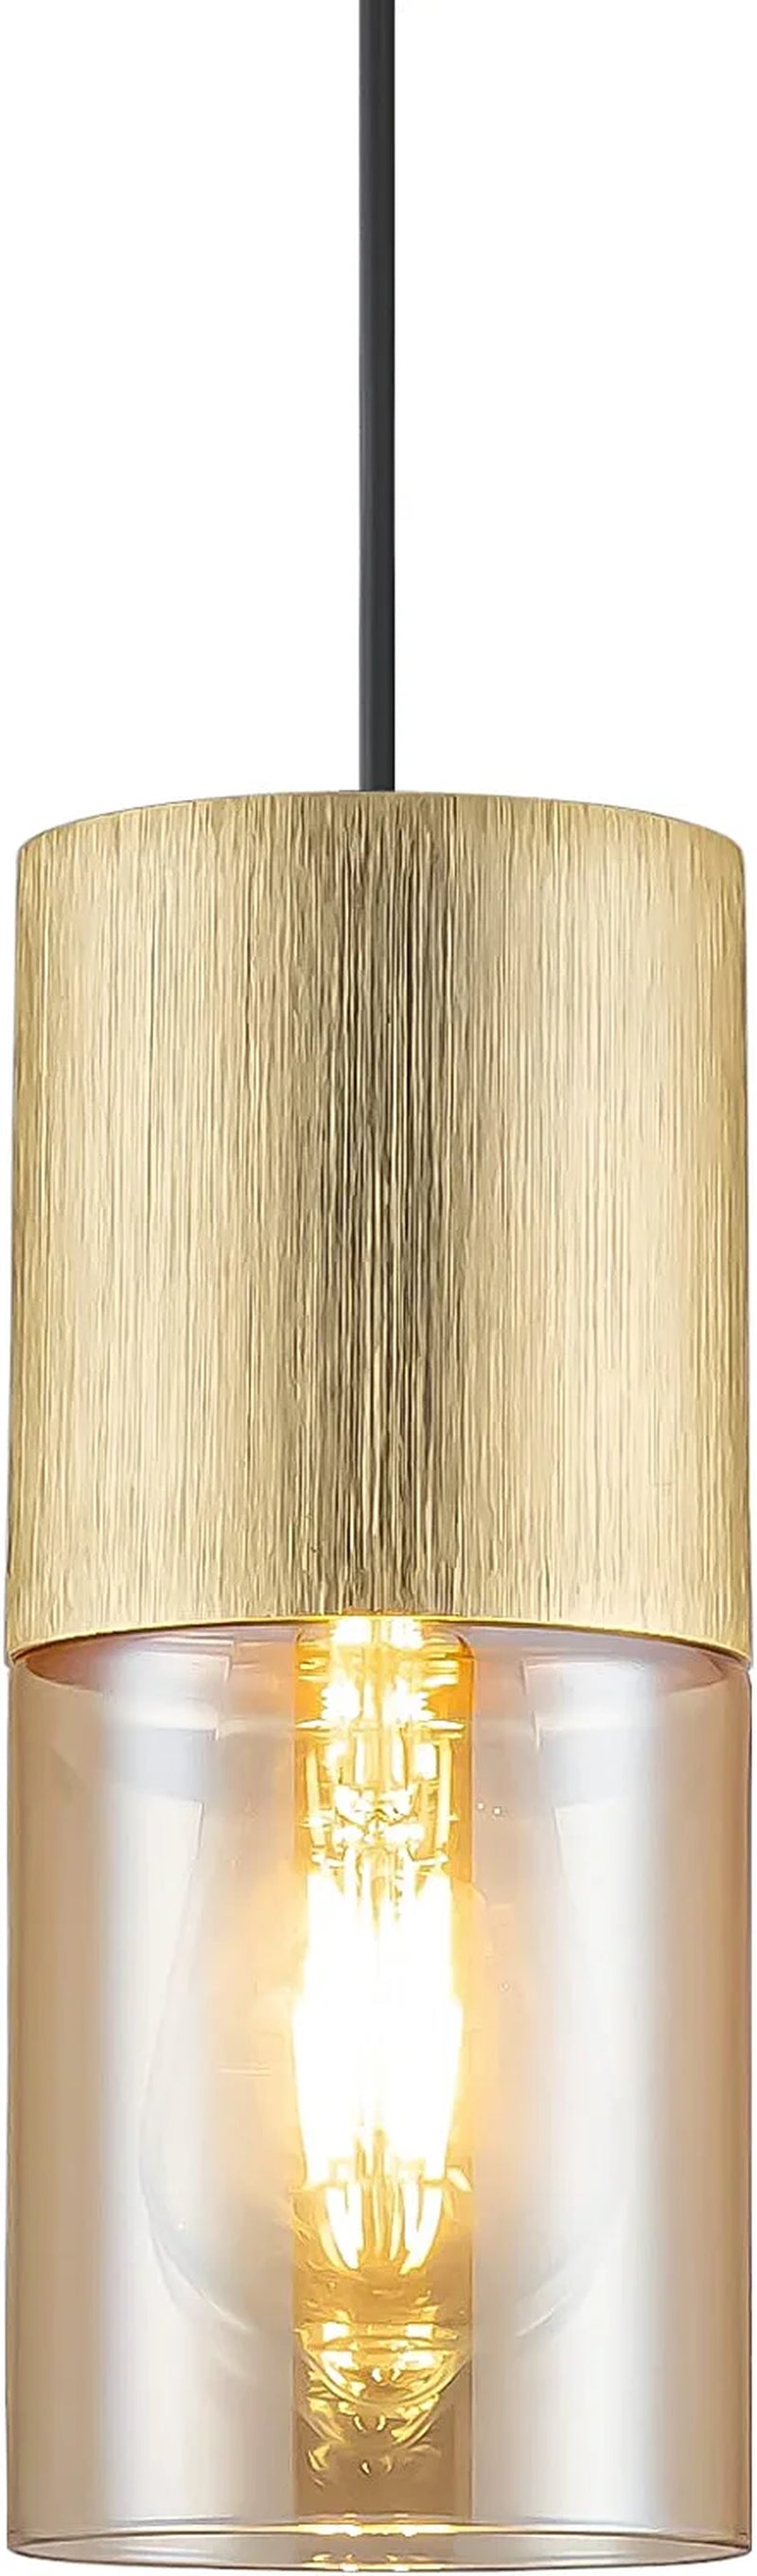 AKEZON Modern Glass Pendant Light 2 Pack, Adjustable Hanging Pendant Lighting Kitchen Lights Island Dining Room Bathroom Bar, Brushed Nickel Finish Home & Garden > Lighting > Lighting Fixtures AKEZON Gold 1-Light 